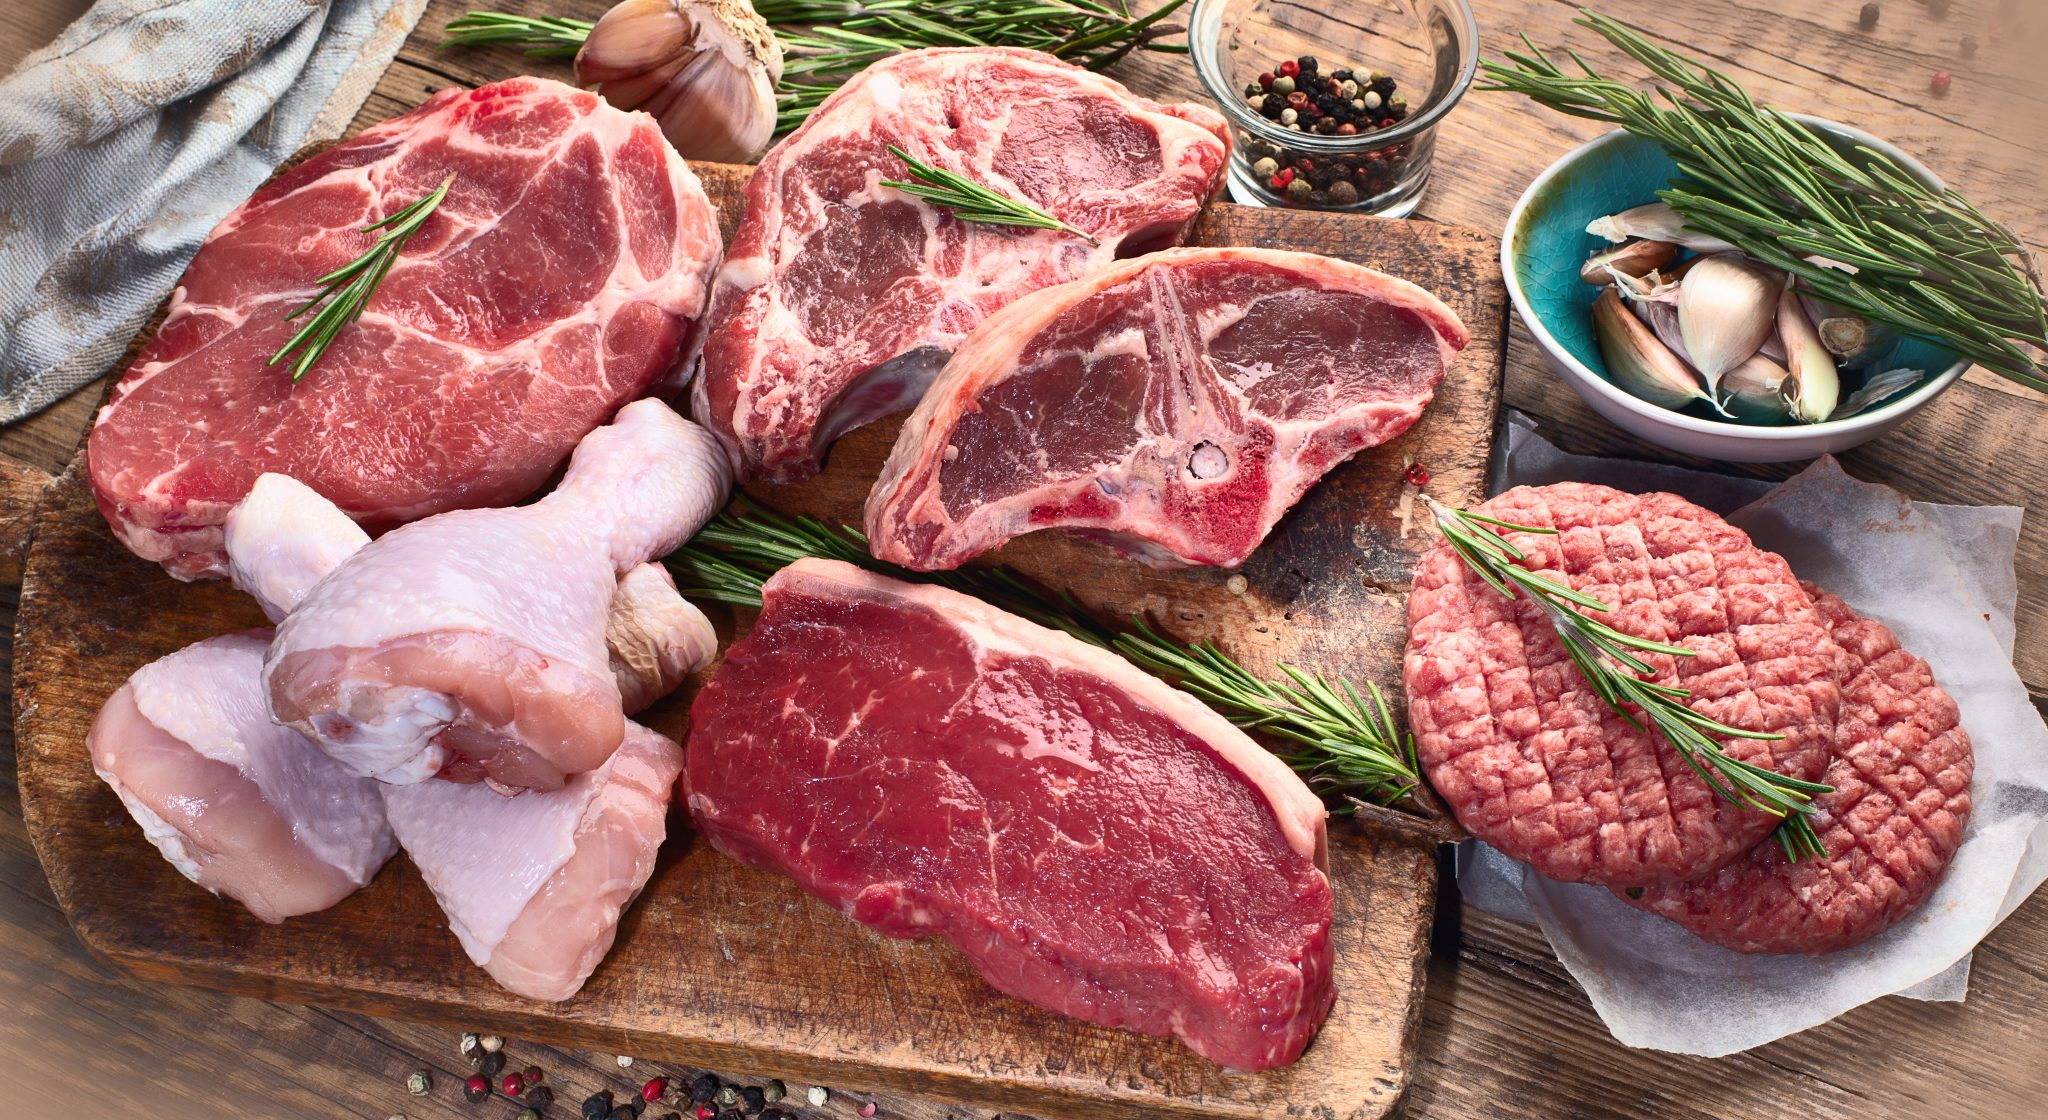 Fødevarestyrelsen: Dette kød kan indeholde salmonella - smid det ud!